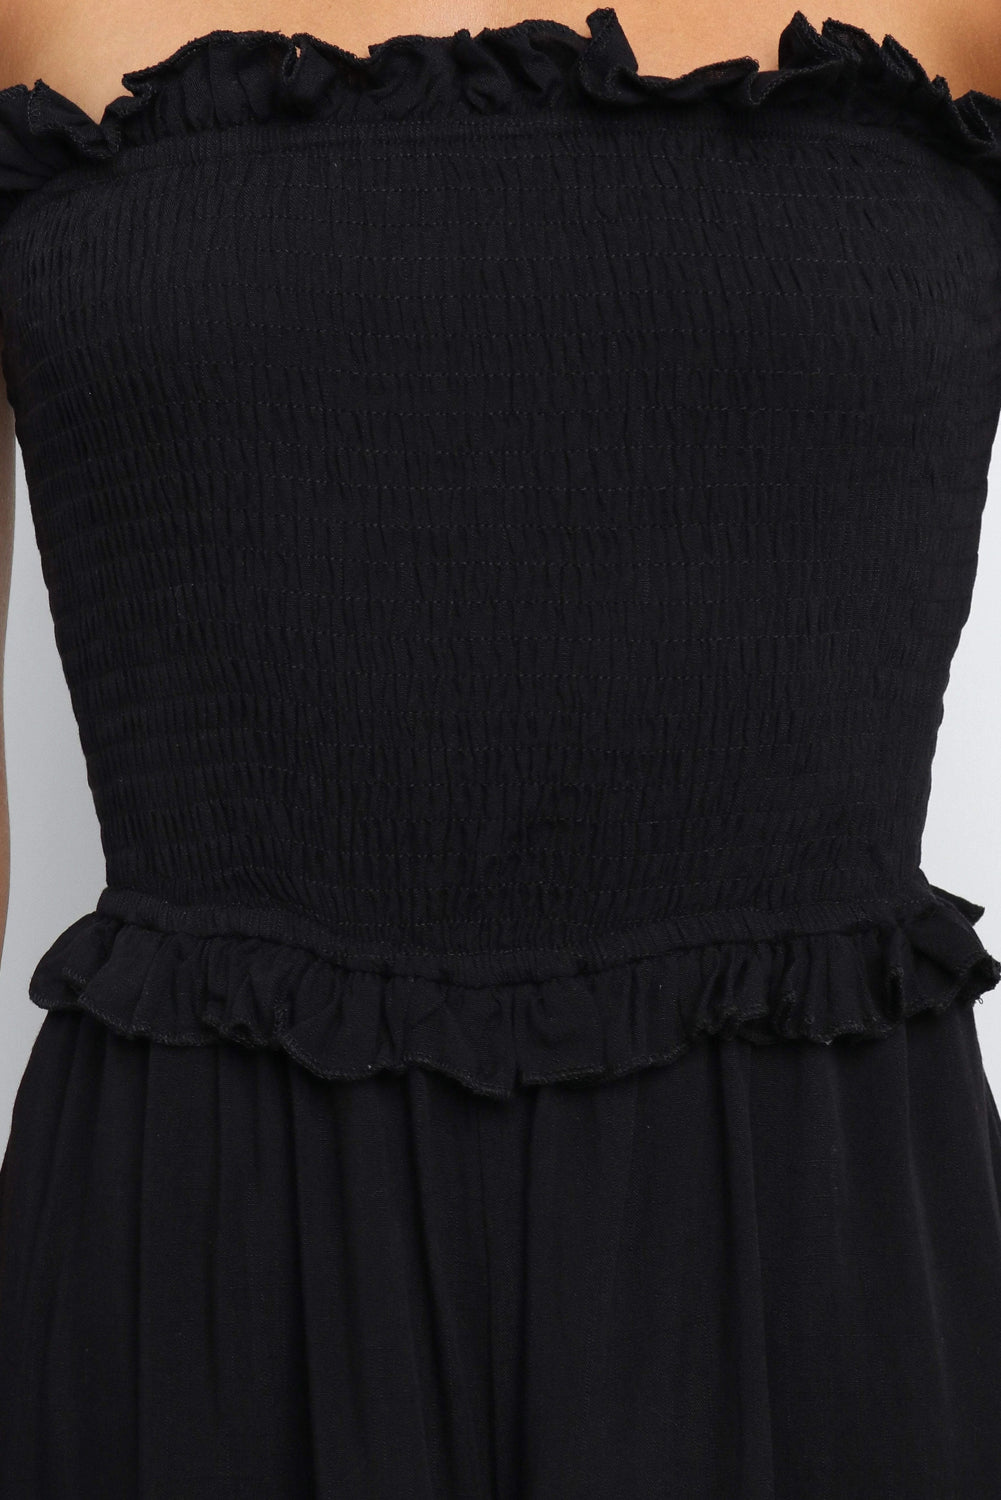 ΑΜΕΣΑ ΔΙΑΘΕΣΙΜΟ: μαύρη στράπλες ολόσωμη φόρμα LUPITA BLACK